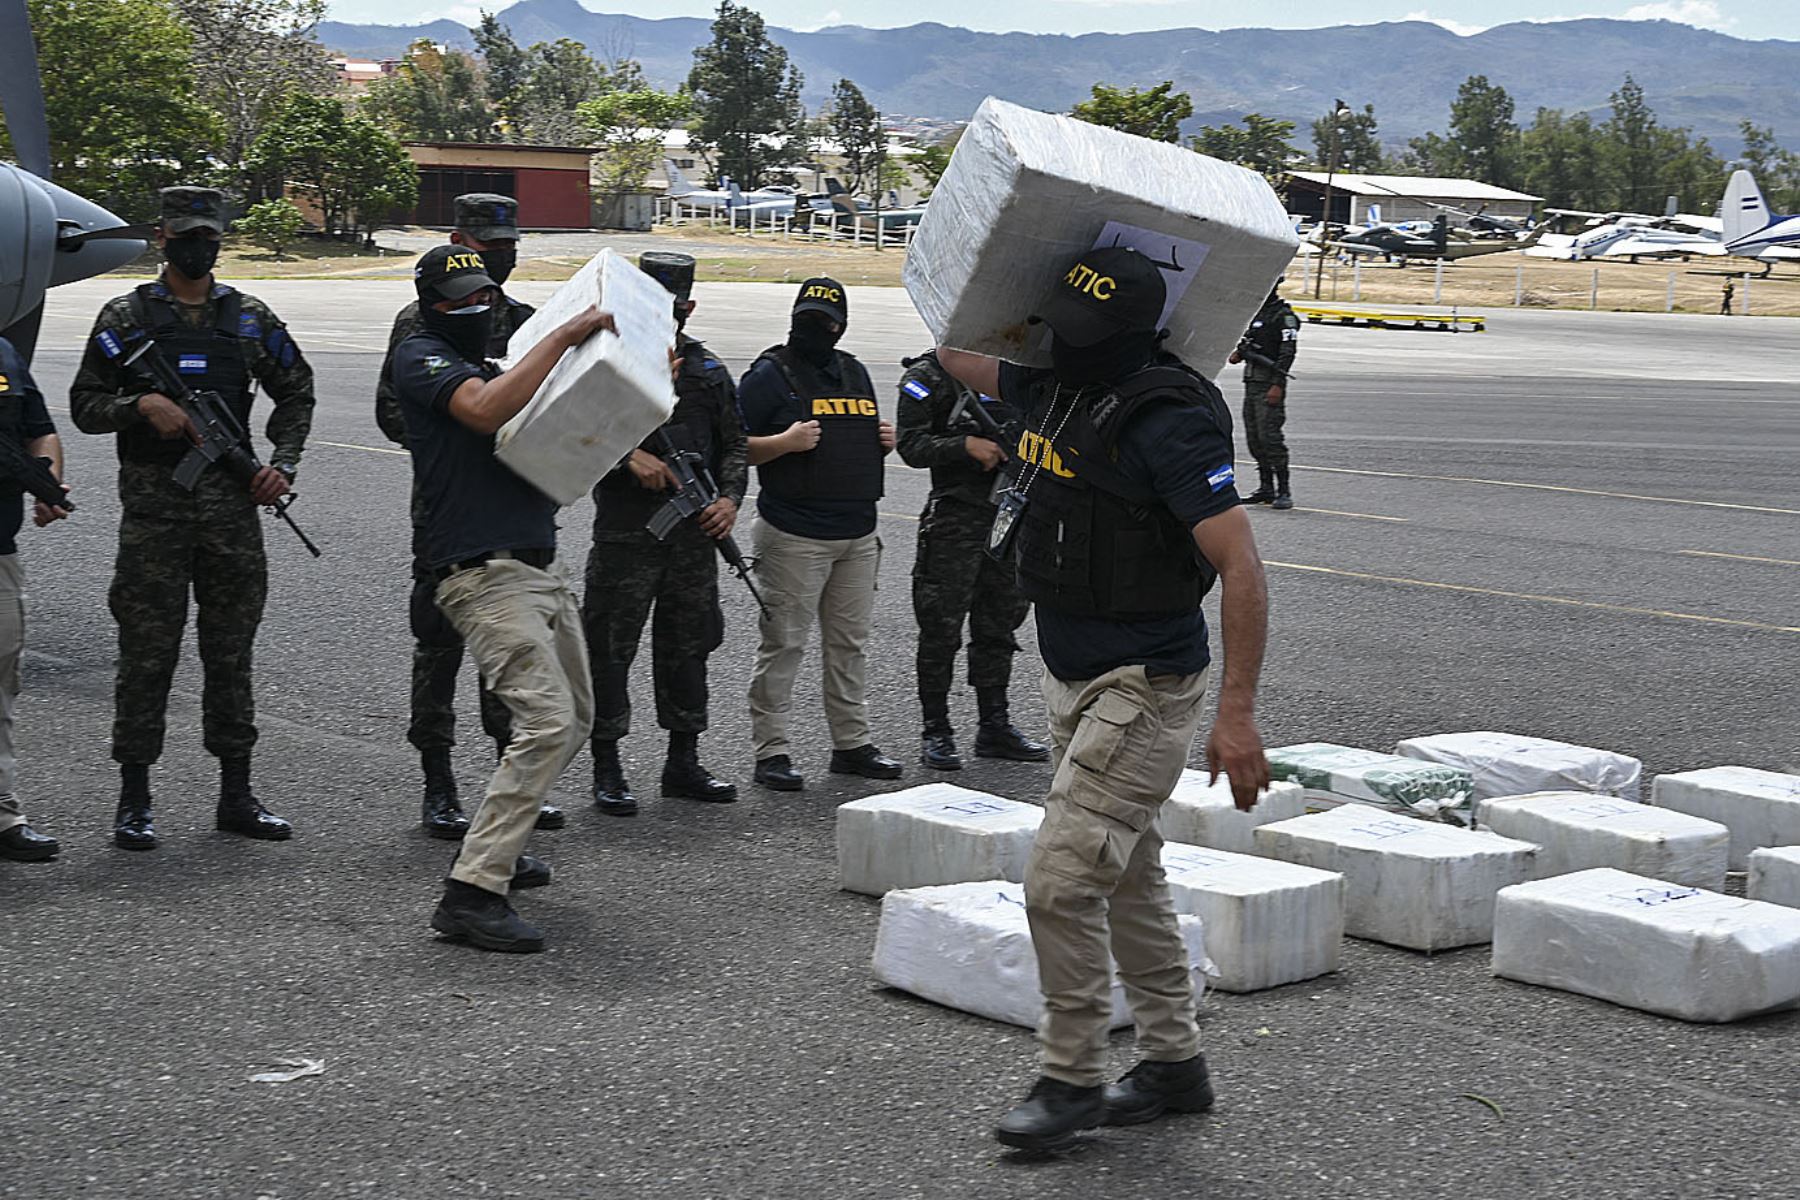 La cocaína, la maquinaria y otros elementos encontrados, superarían en valor los nueve millones de dólares. Foto: AFP